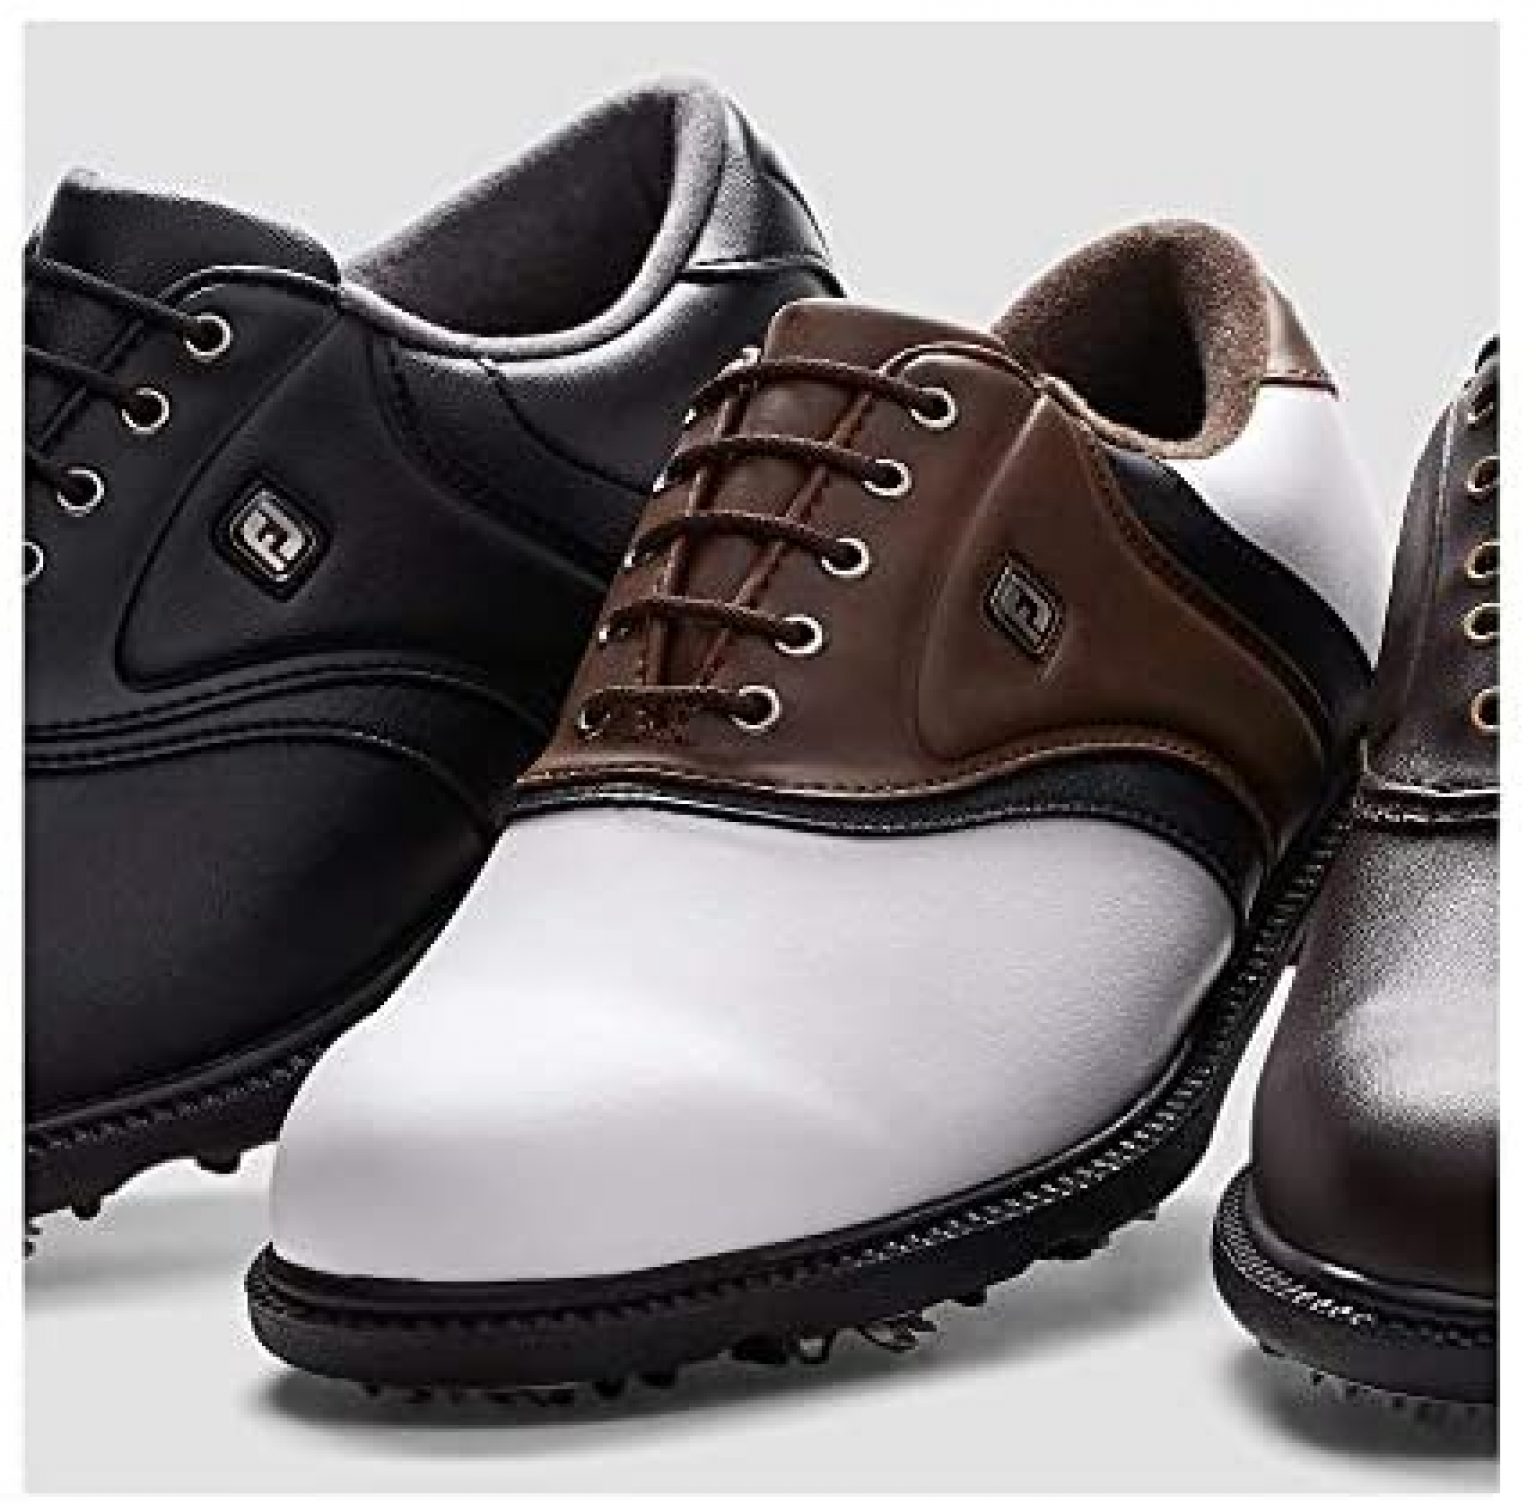 FootJoy Men's Fj Originals Golf Shoes - Golf Products Review